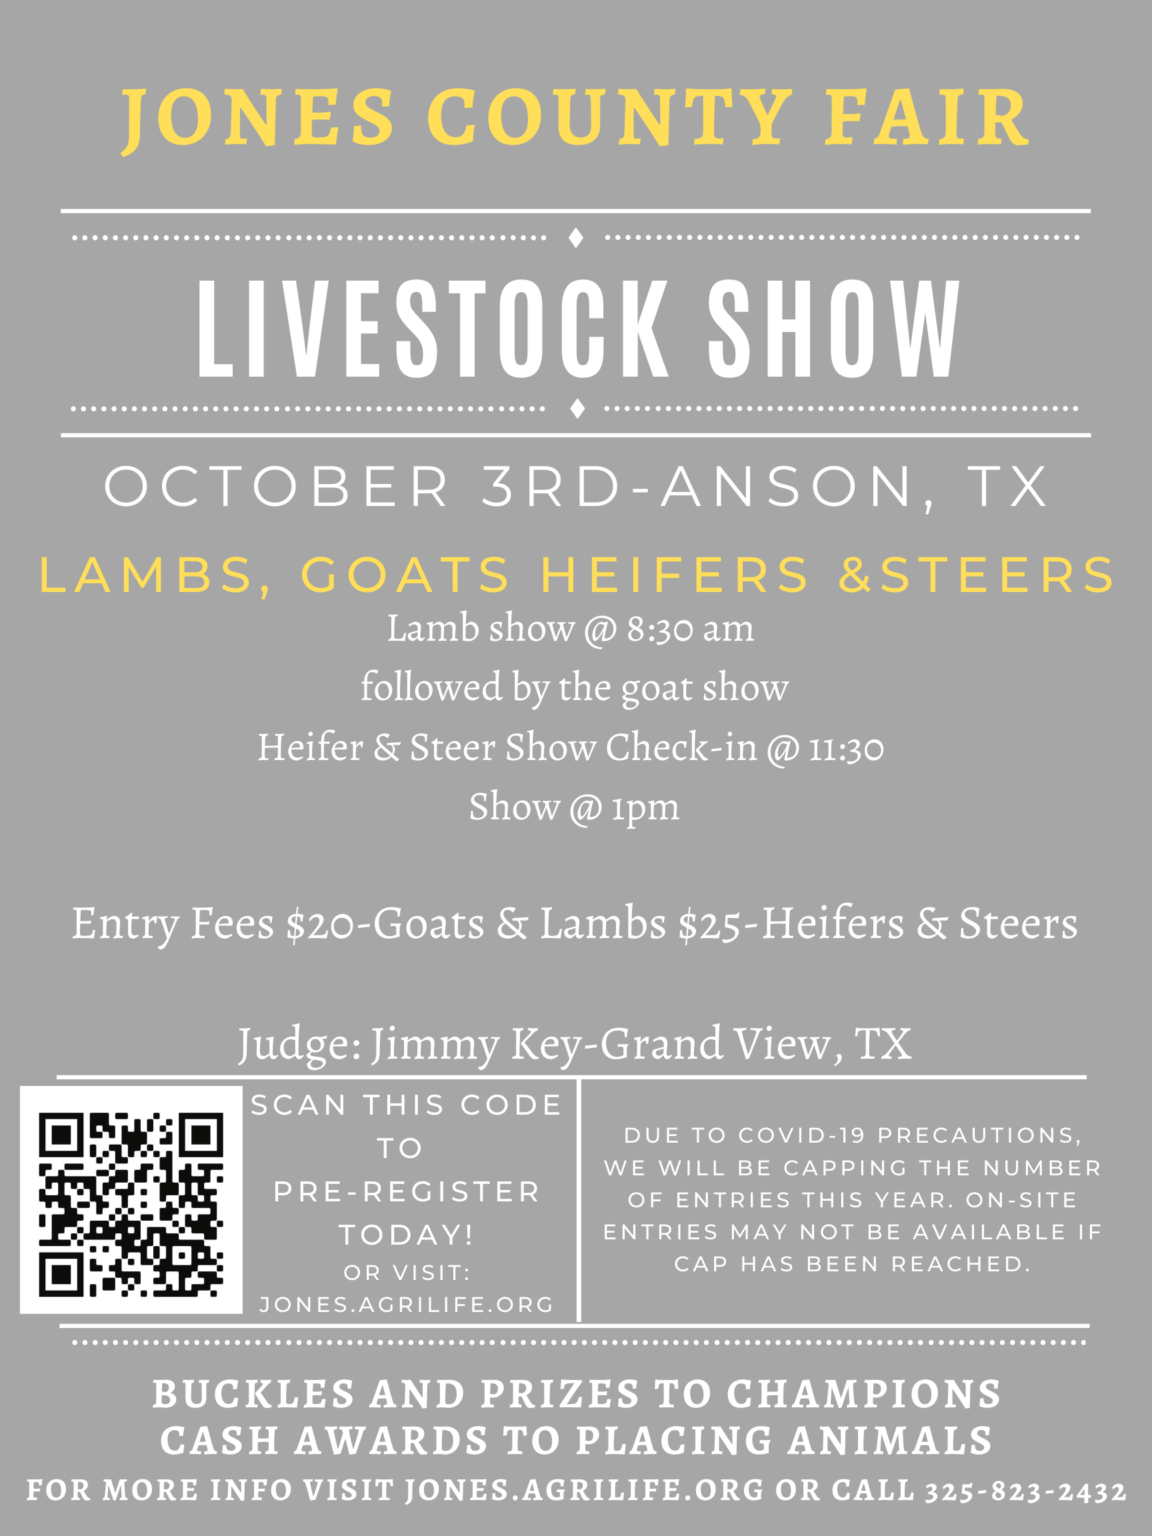 Jones County Fair Livestock Show Jones